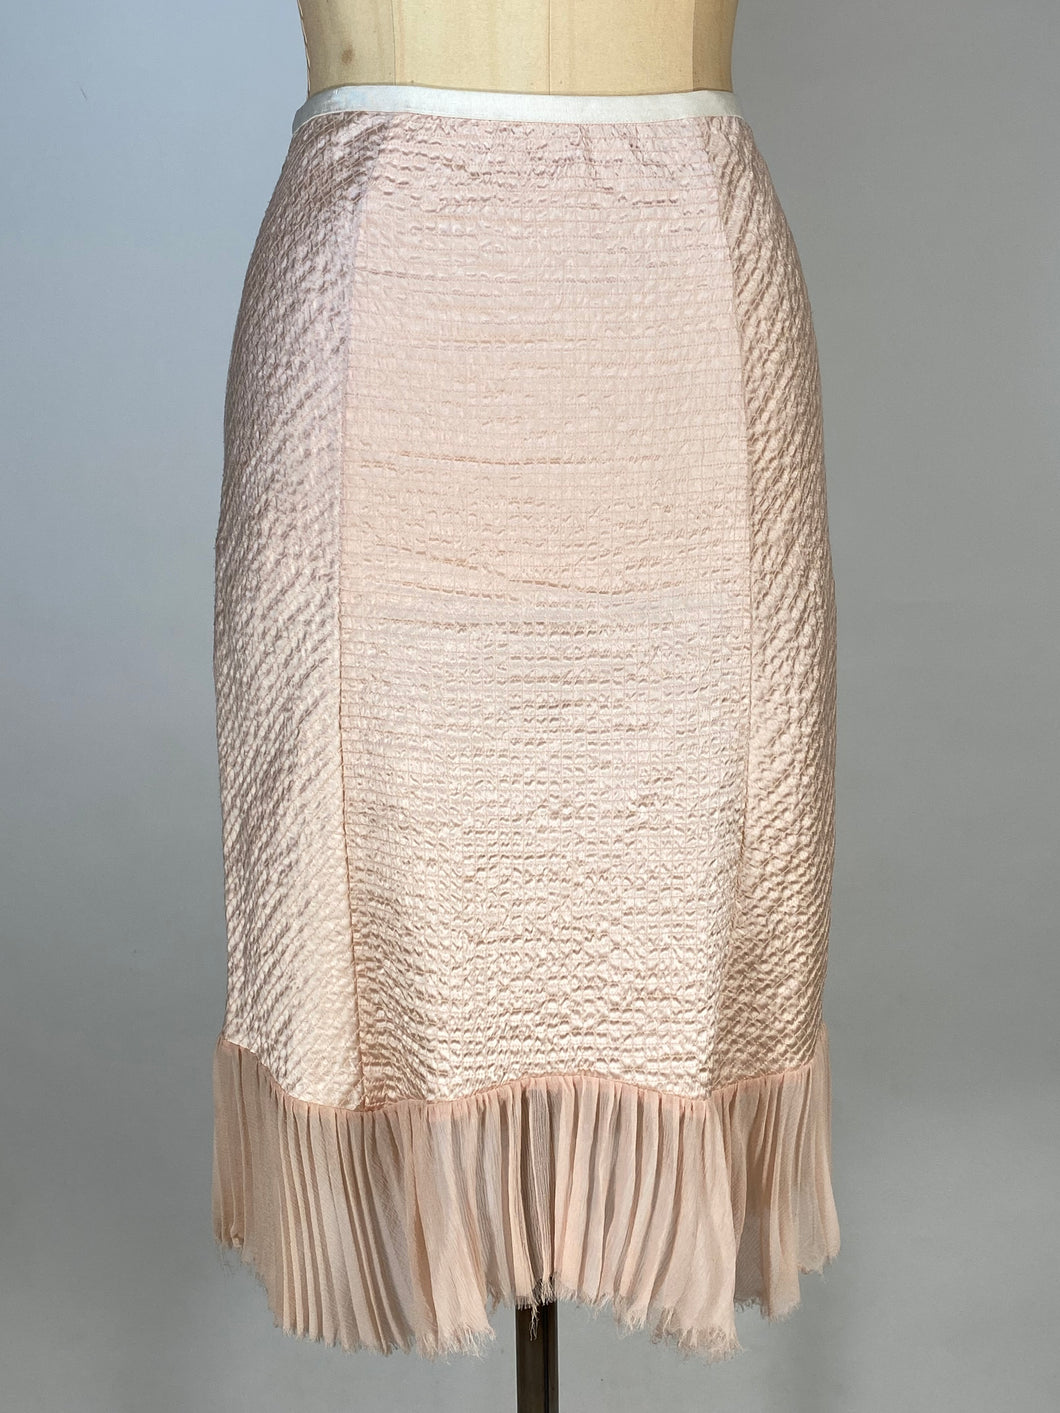 Modern 2010's ingerie-inspired shell pink silk skirt by DVF Diane Von Furstenberg size Small